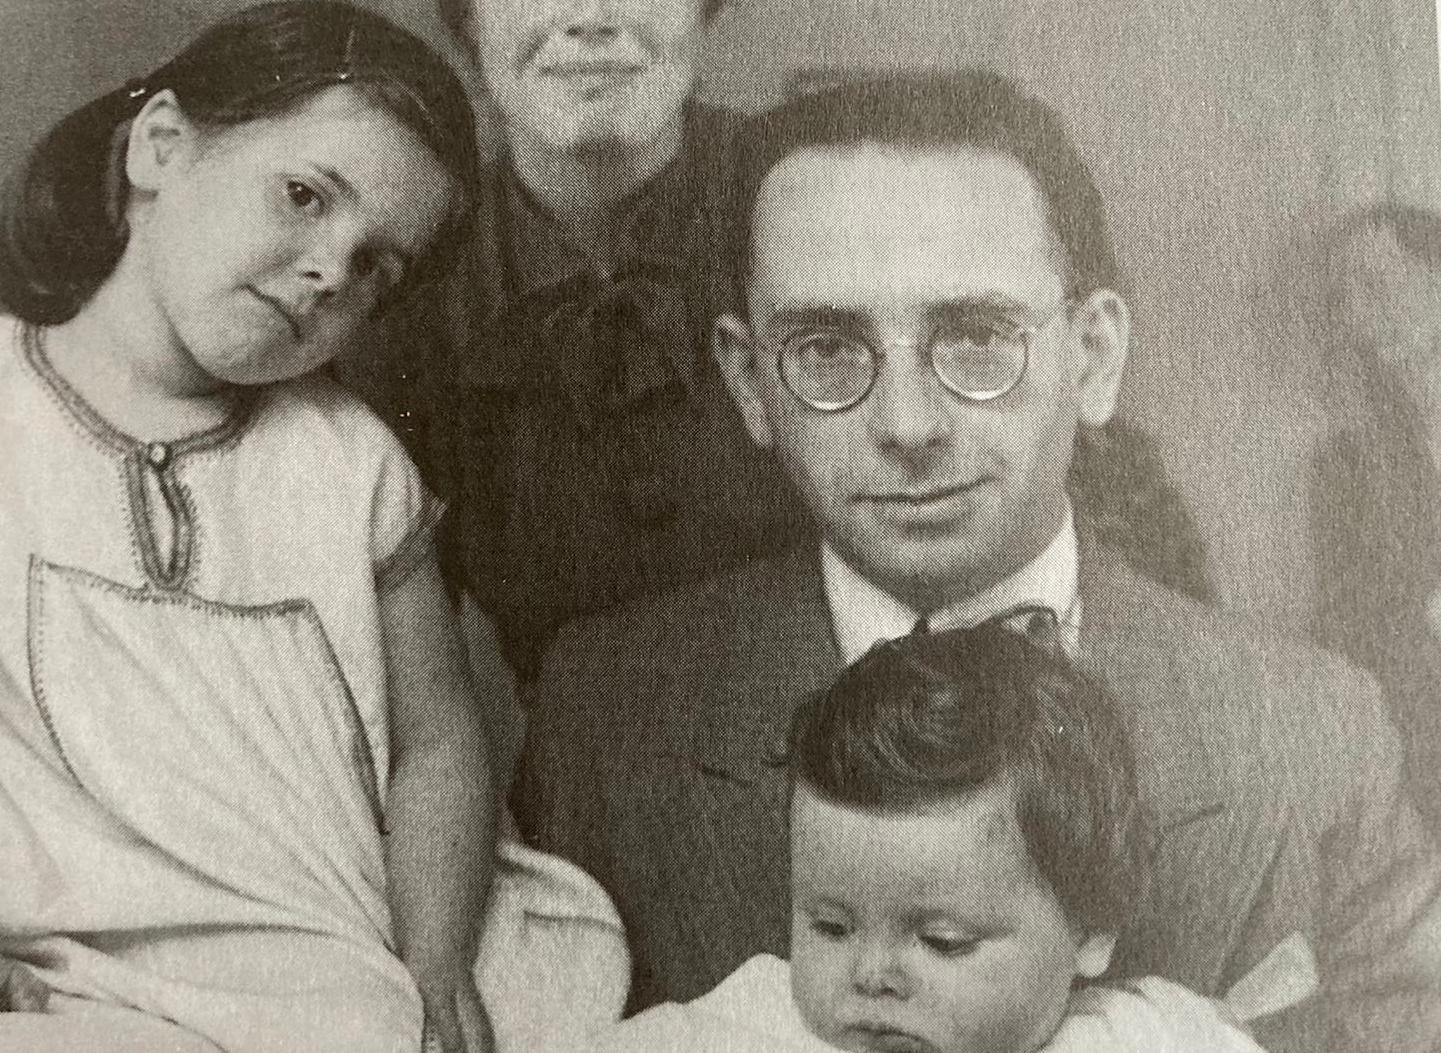 Rabbiner Mehler mit seiner Tochter und dem Sohn, Amsterdam 1939. Quelle: Suzanne Mehler Whitney, Appel is Forever, 1999. 